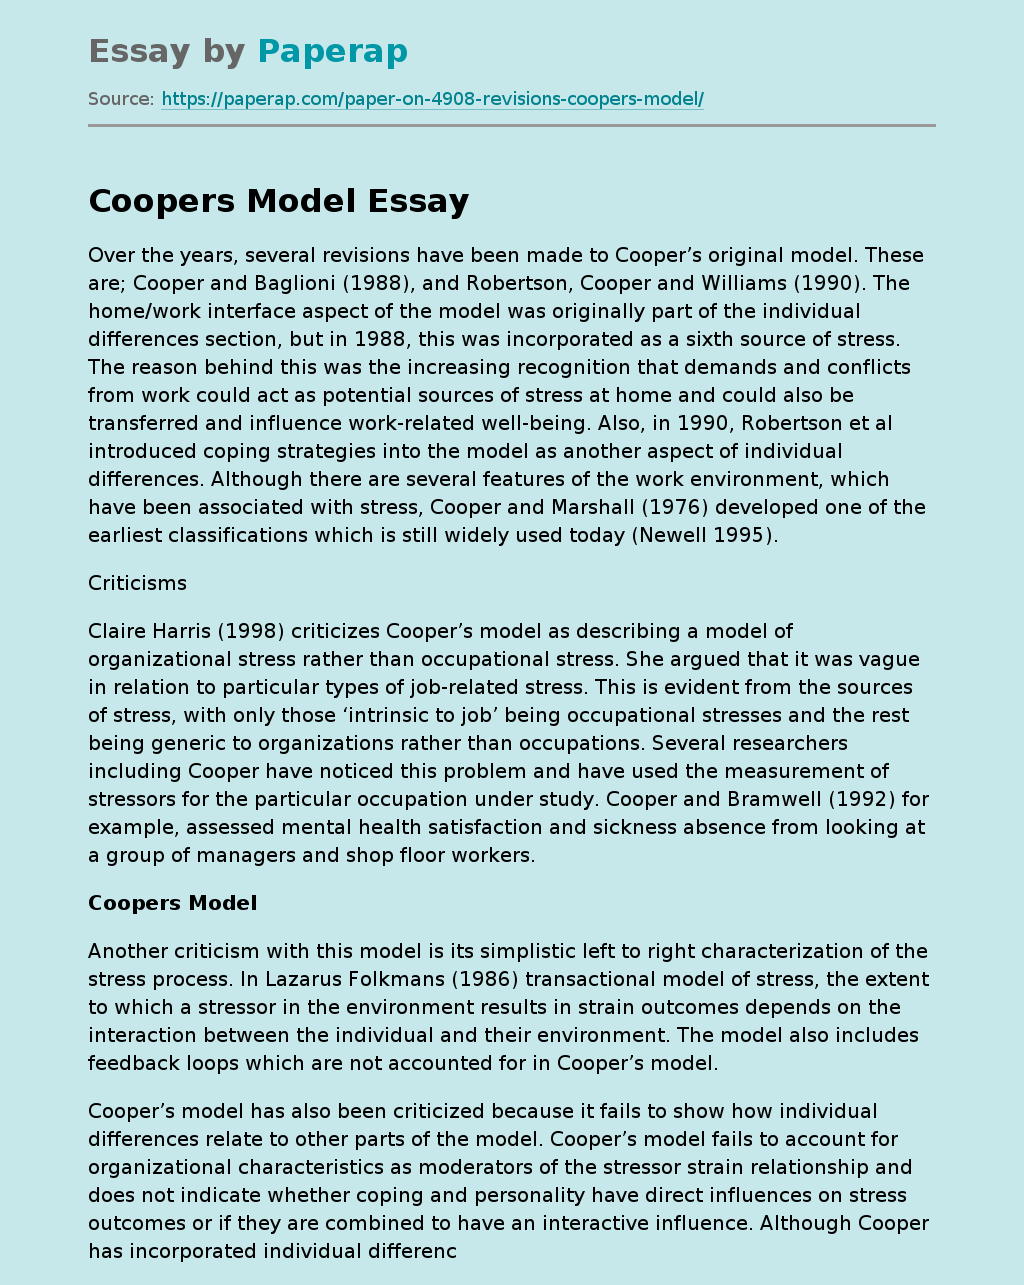 Coping Strategies in Cooper's Model